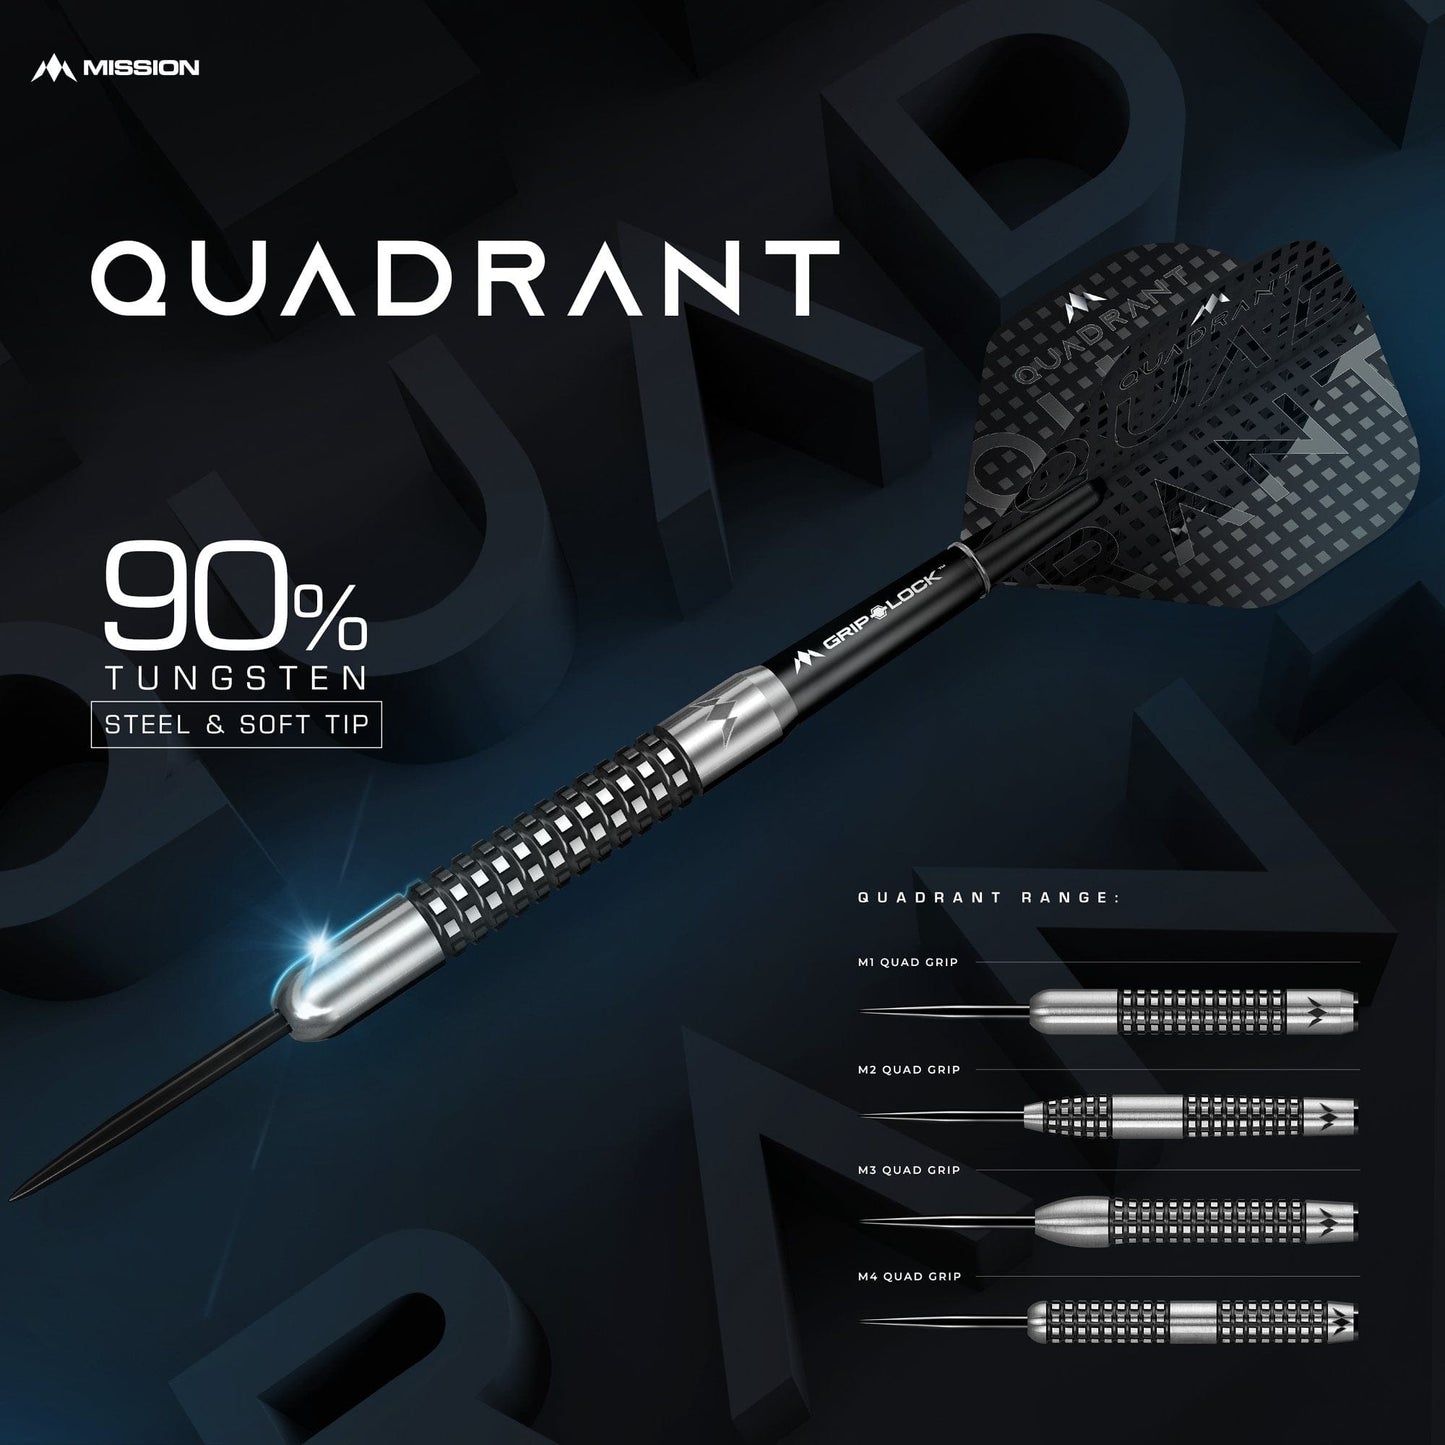 *Mission Quadrant Darts - Steel Tip - M4 - Quad Grip